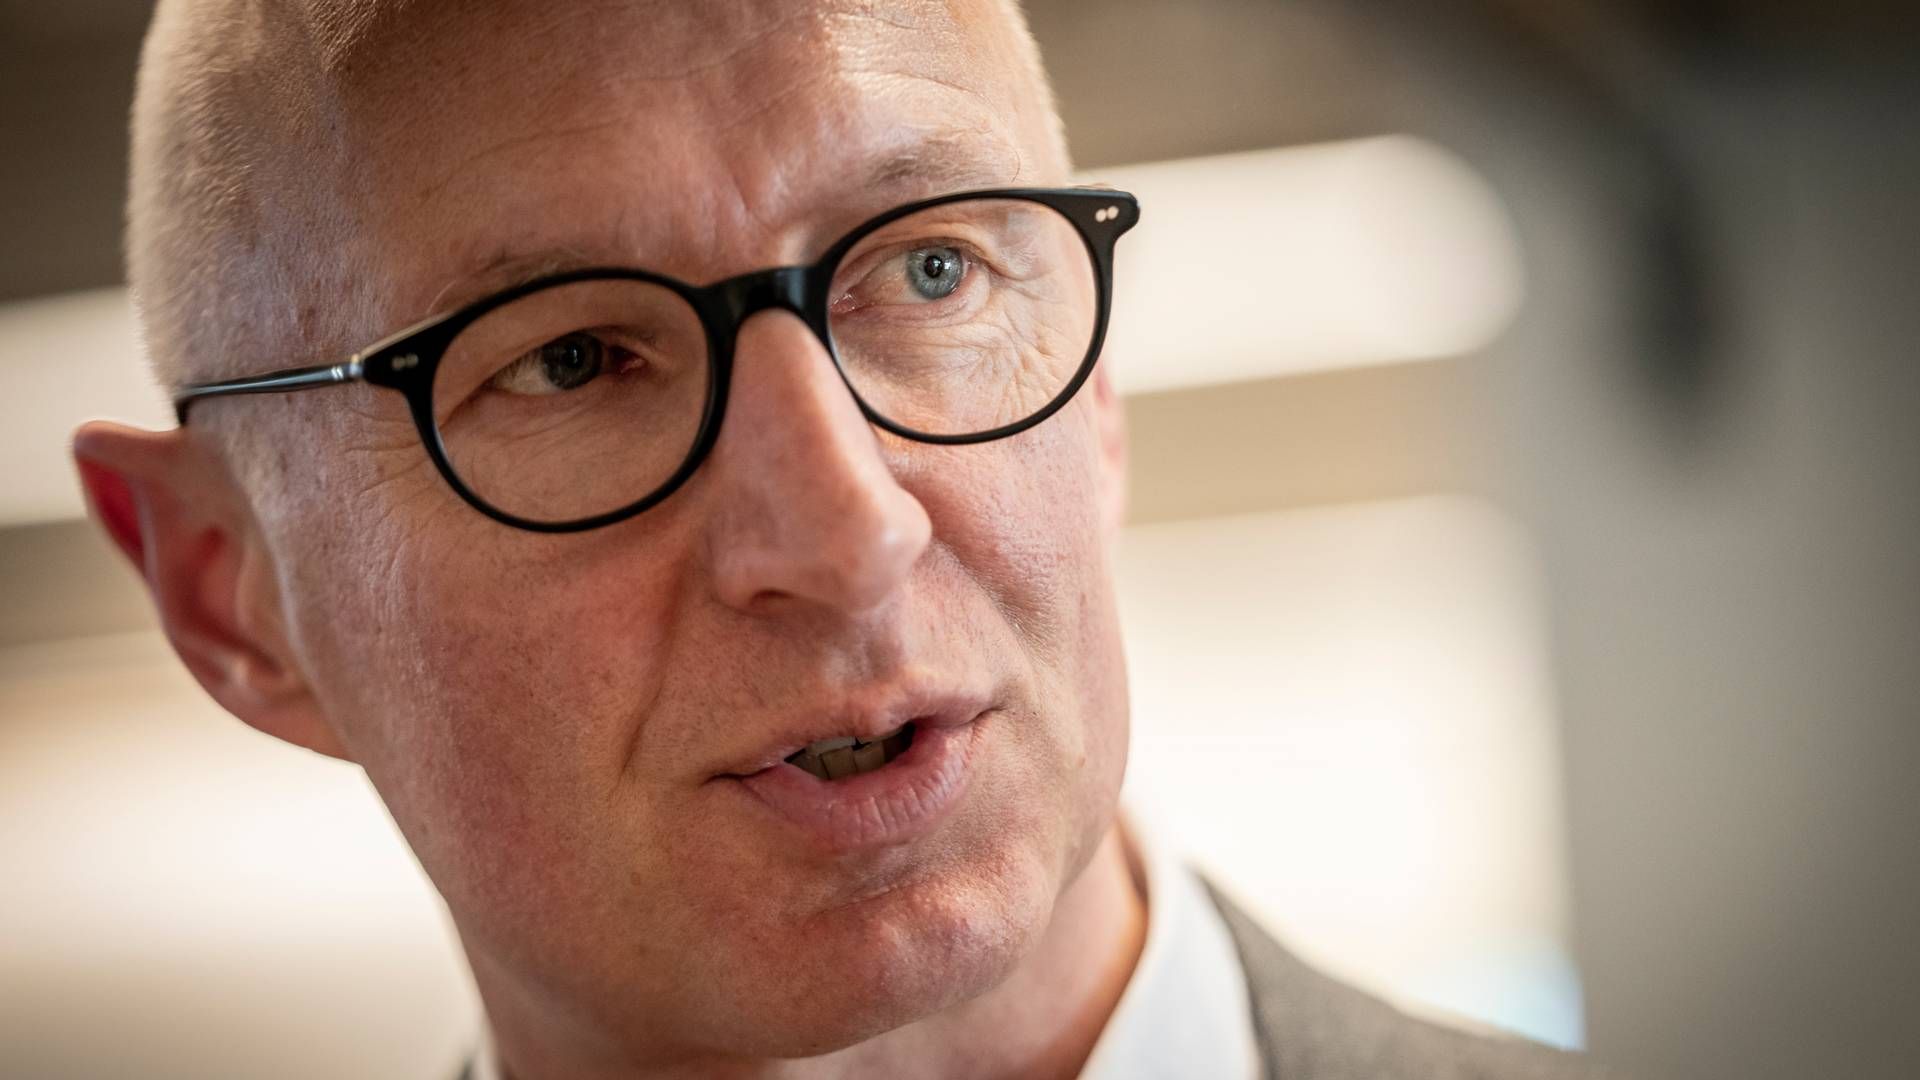 Lars Fruergaard Jørgensen, CEO of Novo Nordisk | Photo: Mads Claus Rasmussen/Ritzau Scanpix